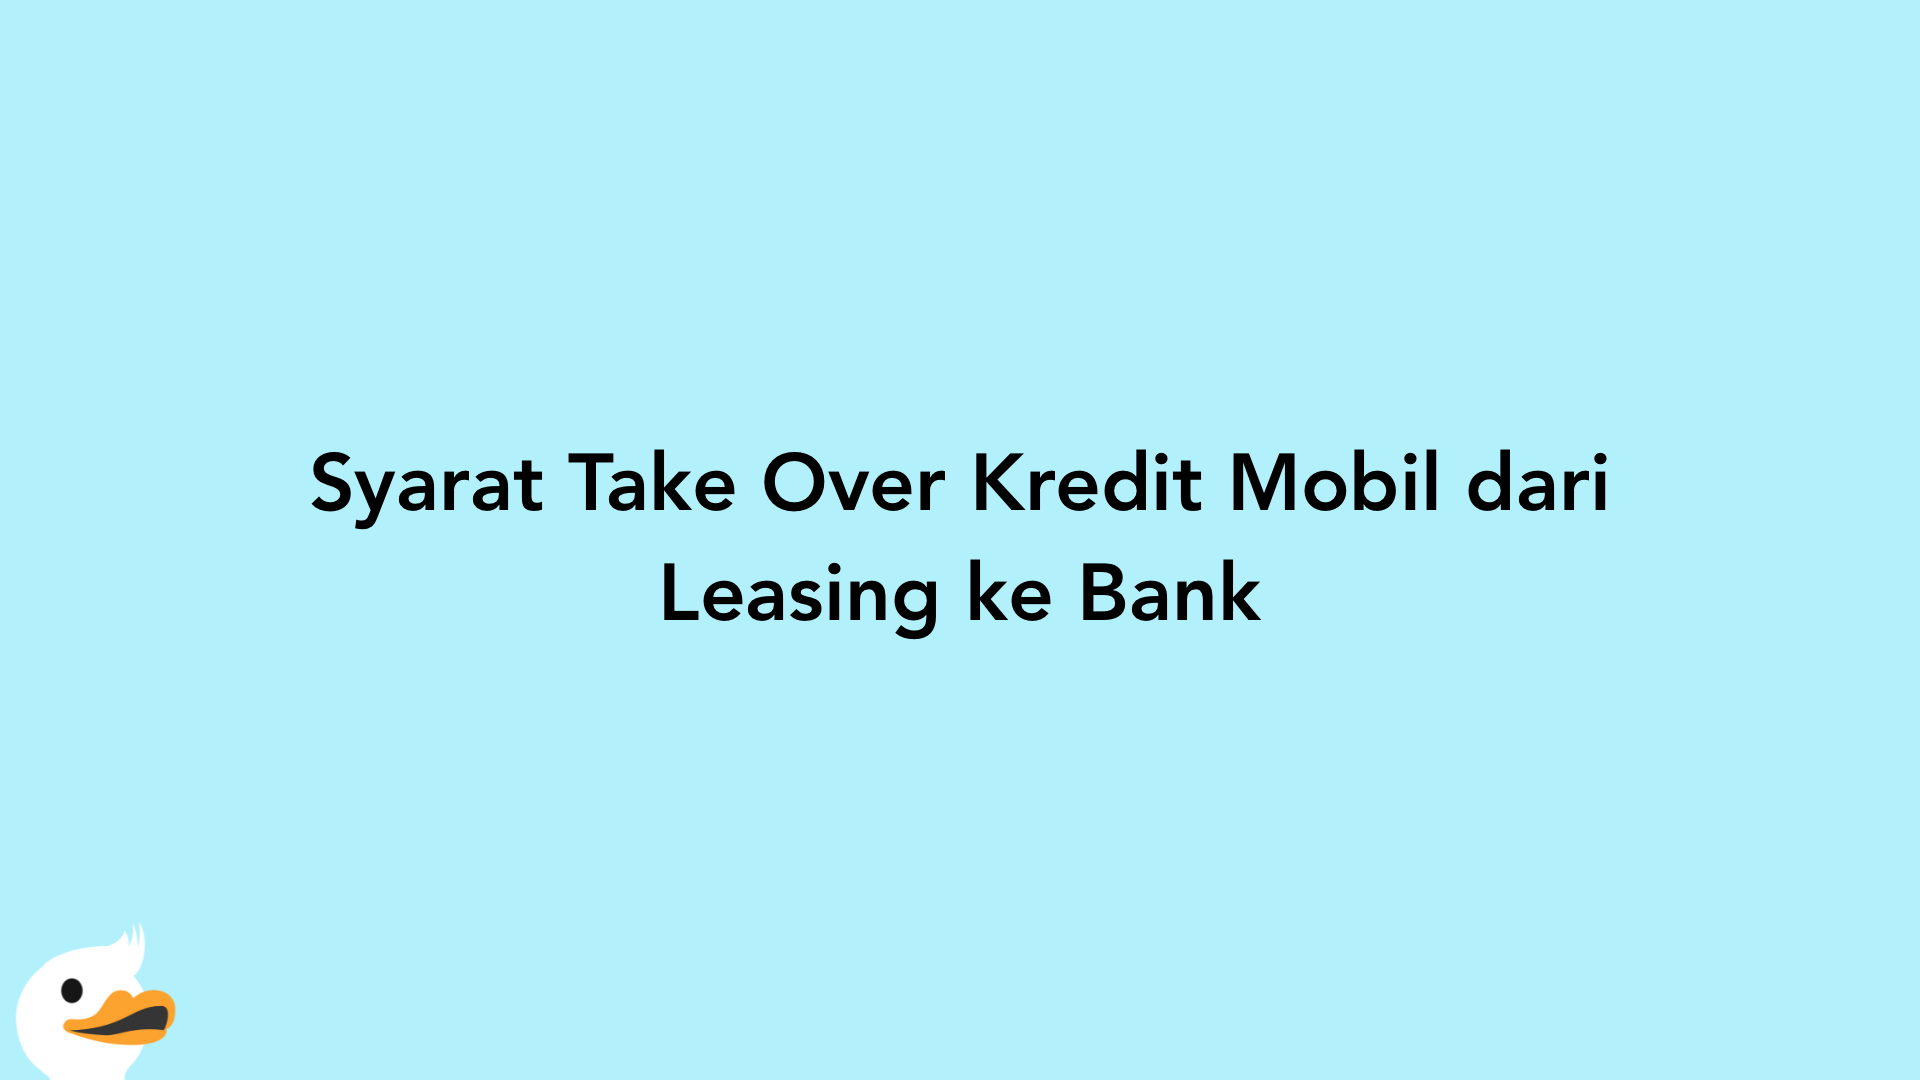 Syarat Take Over Kredit Mobil dari Leasing ke Bank